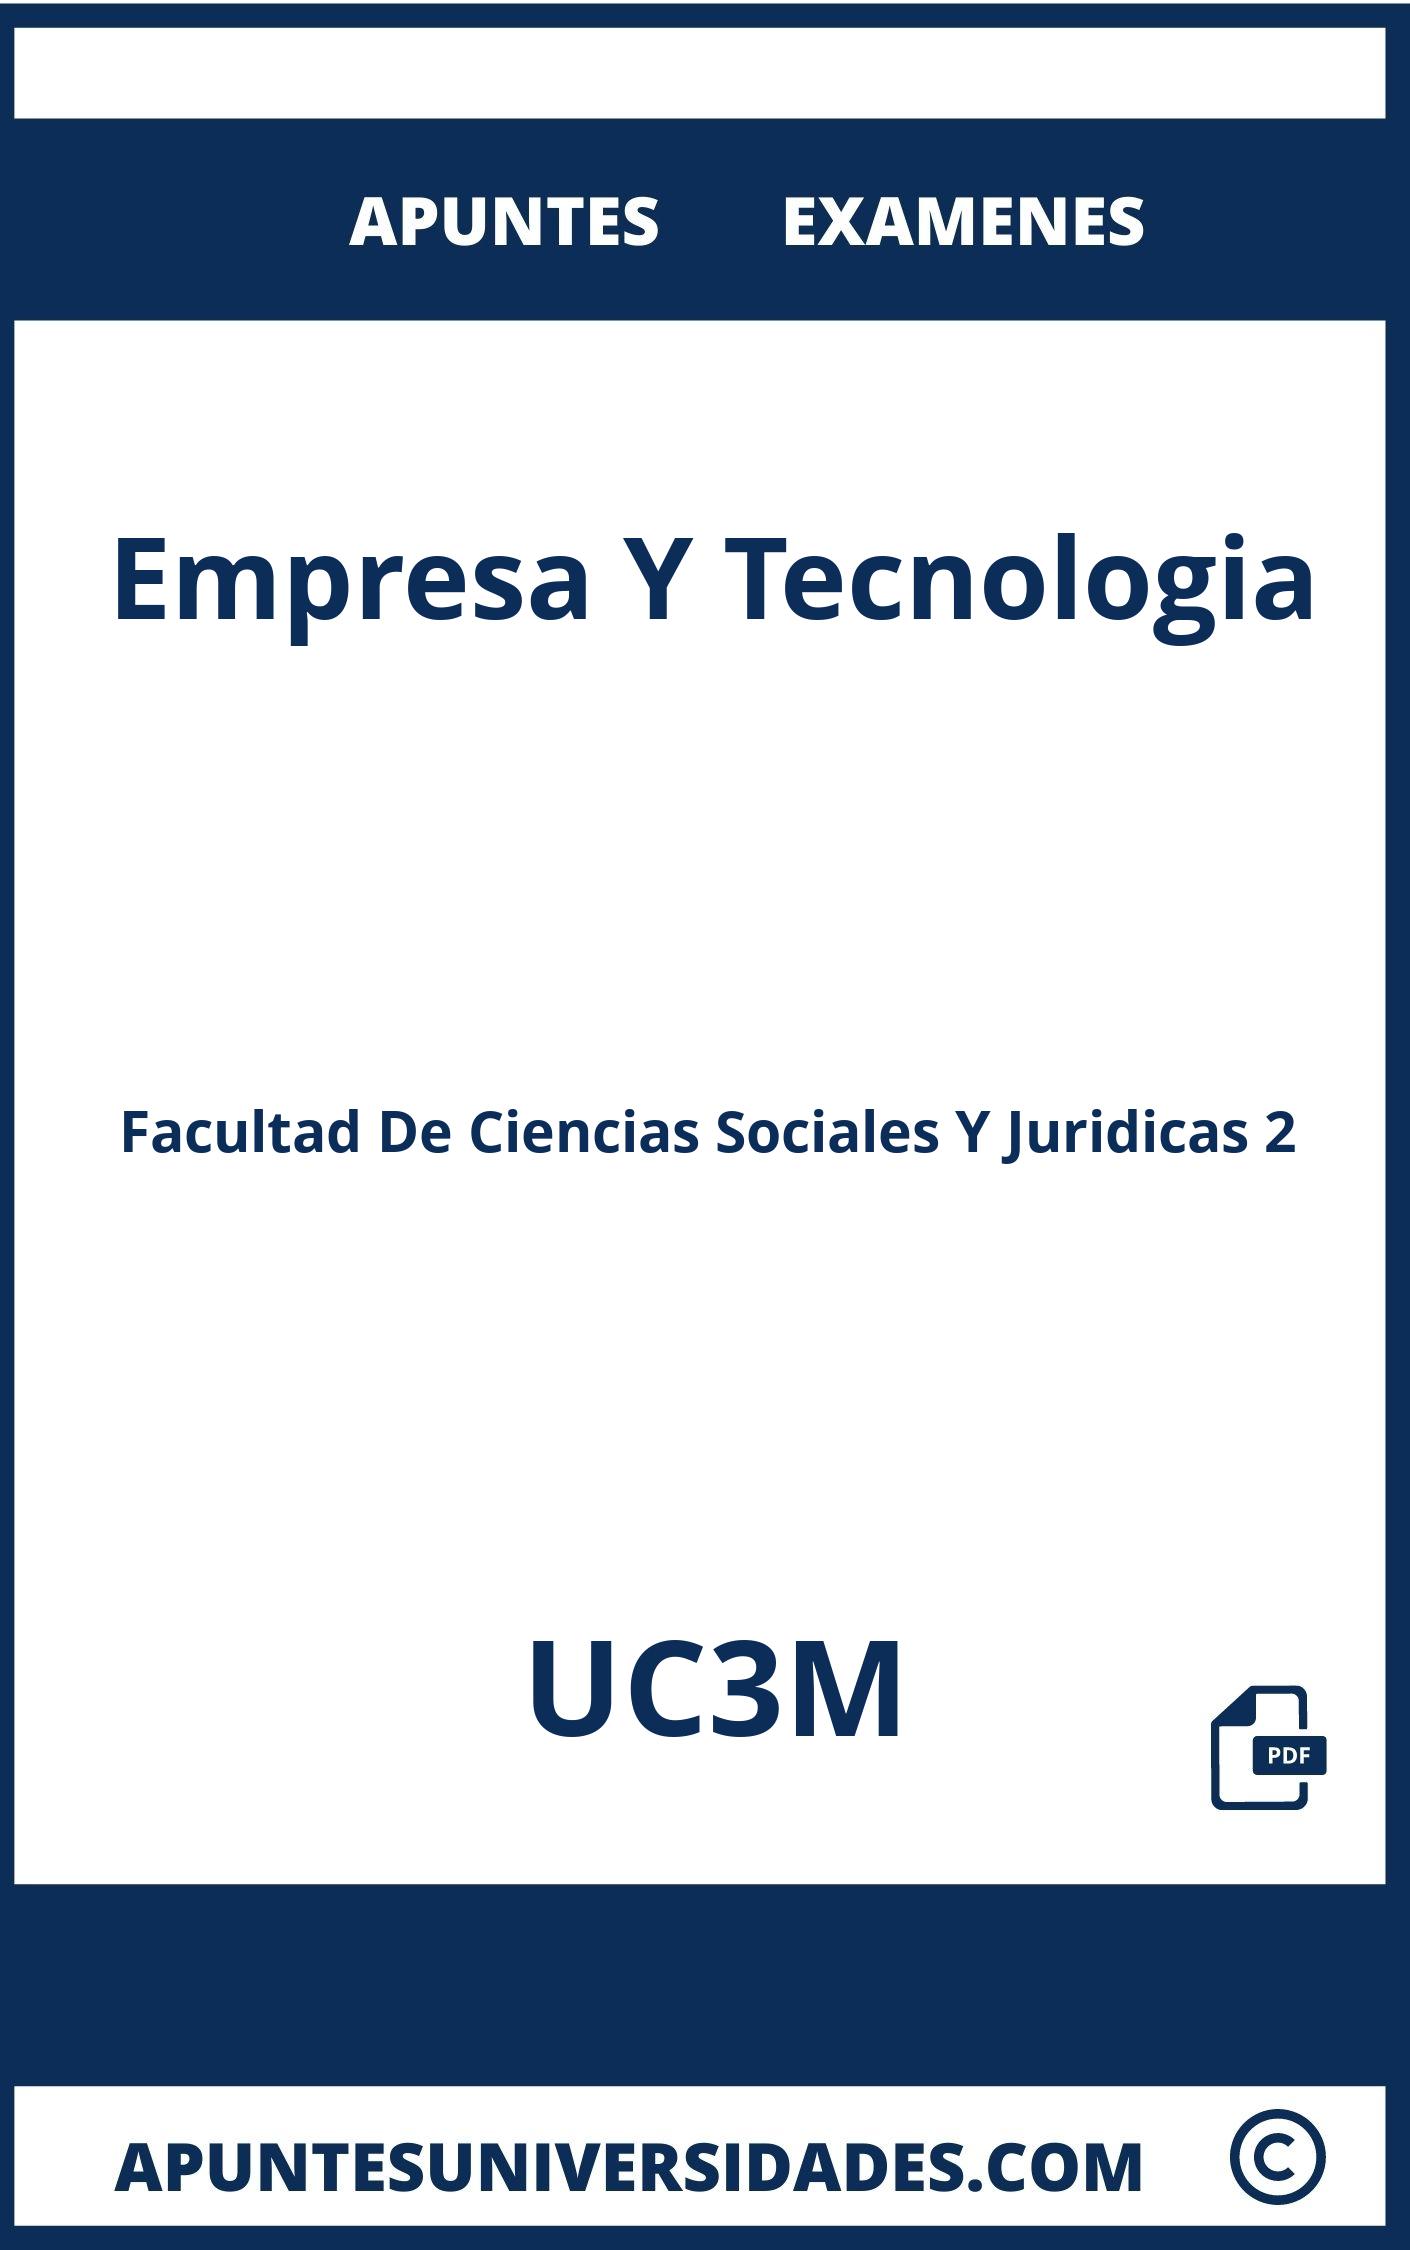 Empresa Y Tecnologia UC3M Apuntes Examenes